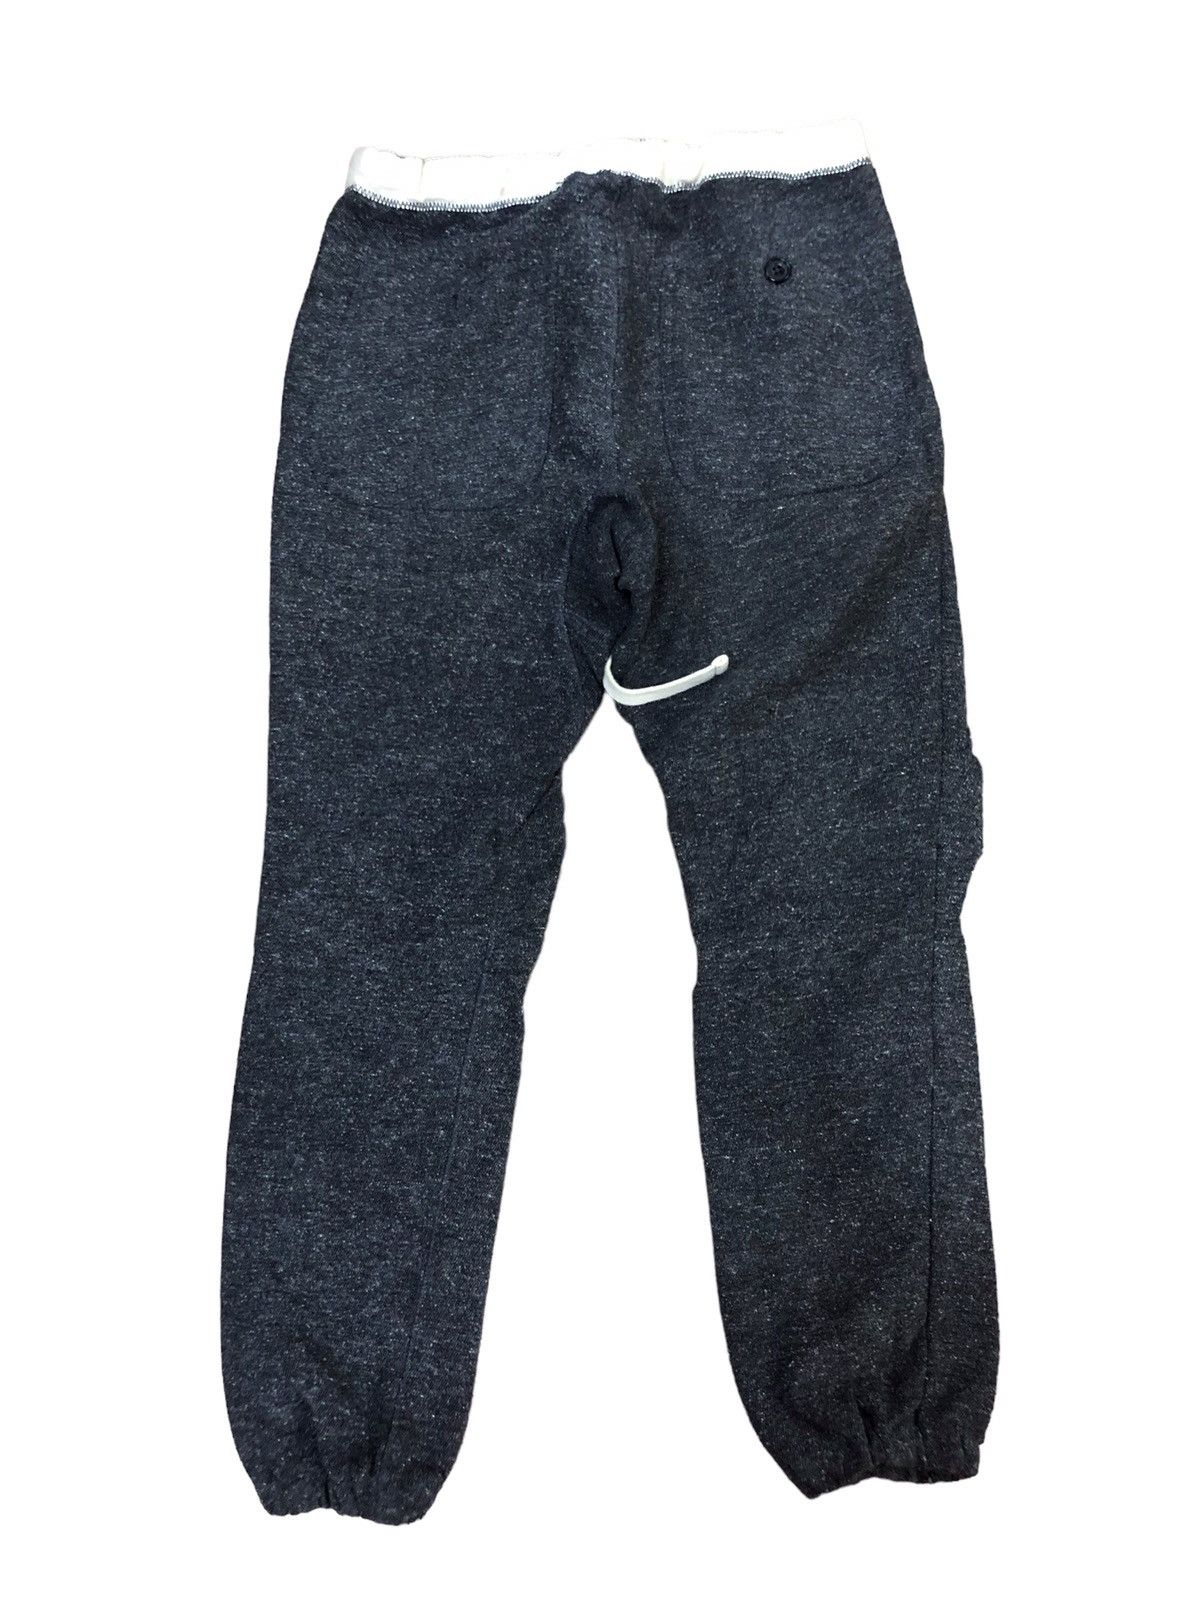 Beams japanese fabric jogger pants - 3